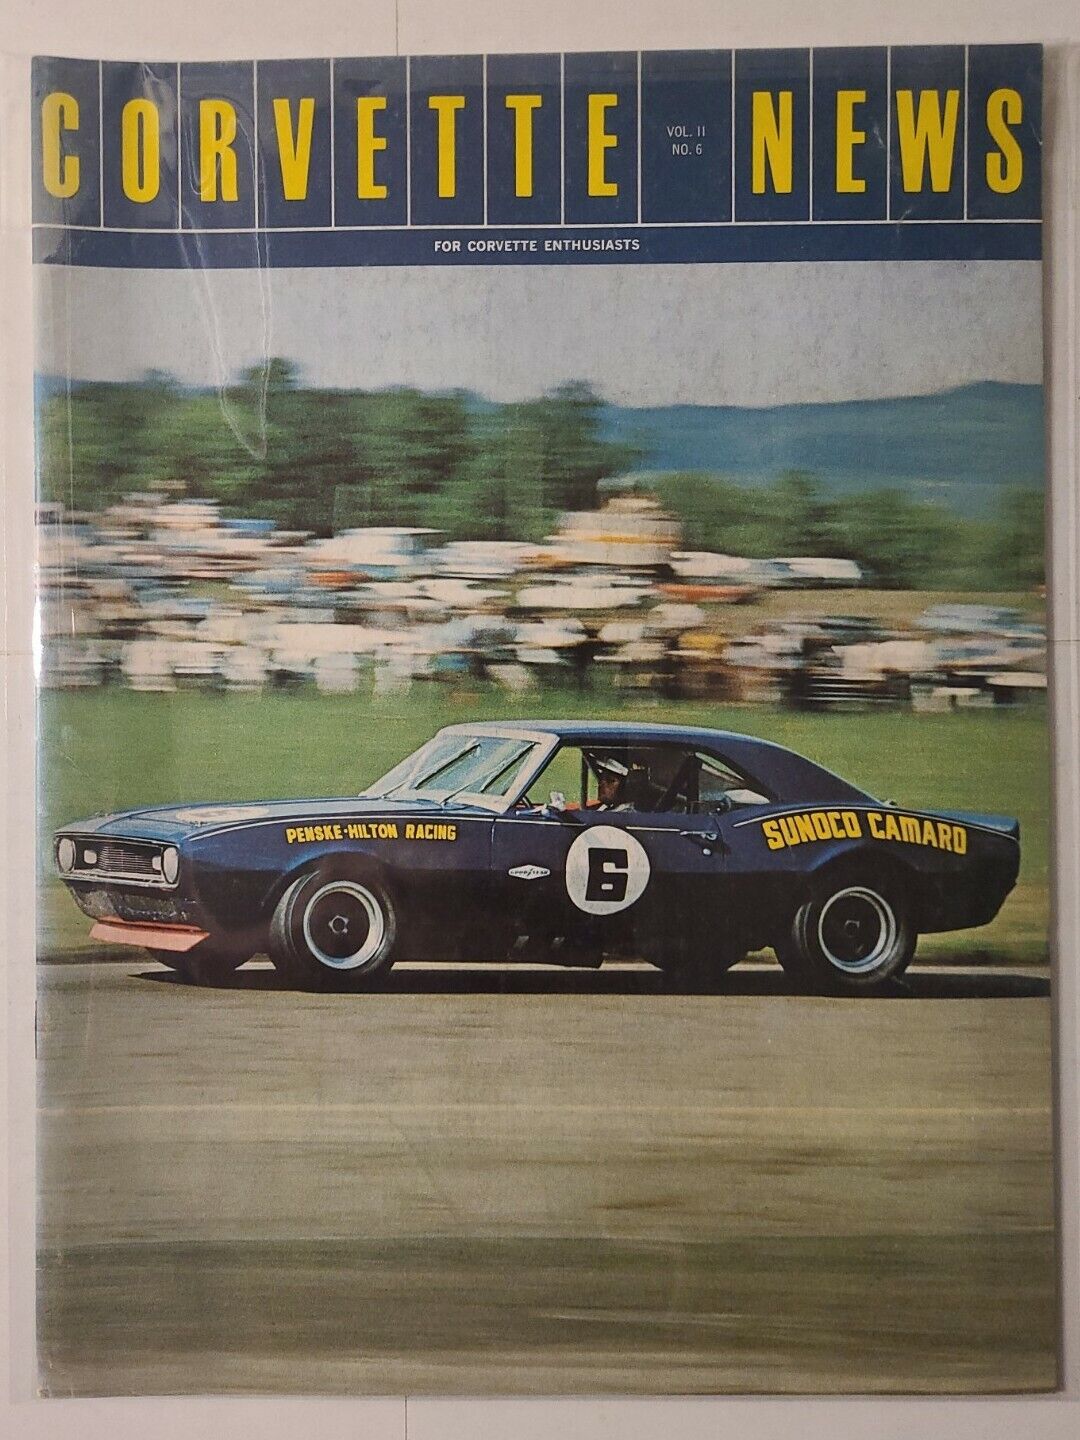 CORVETTE NEWS Magazine - 1968 Vol.11 #6 (Sunoco Camaro Cover)